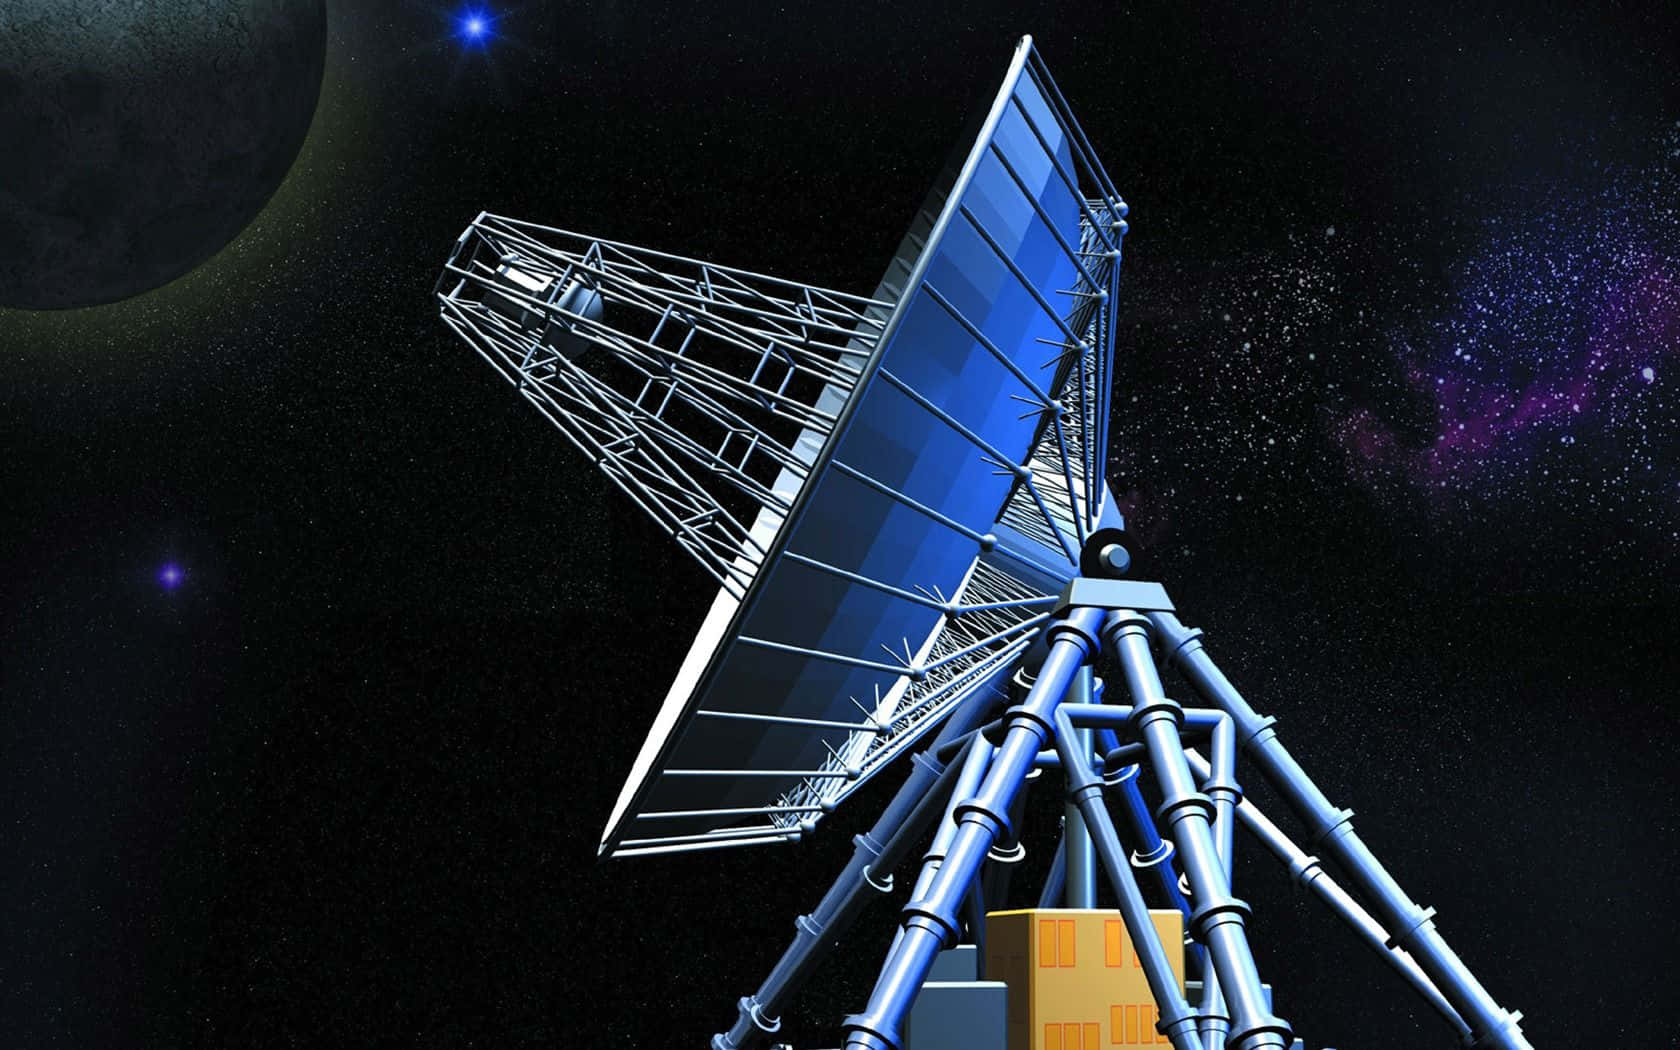 Imhintergrund Ist Ein Satellit Vor Einem Dunklen Nachthimmel Zu Sehen.